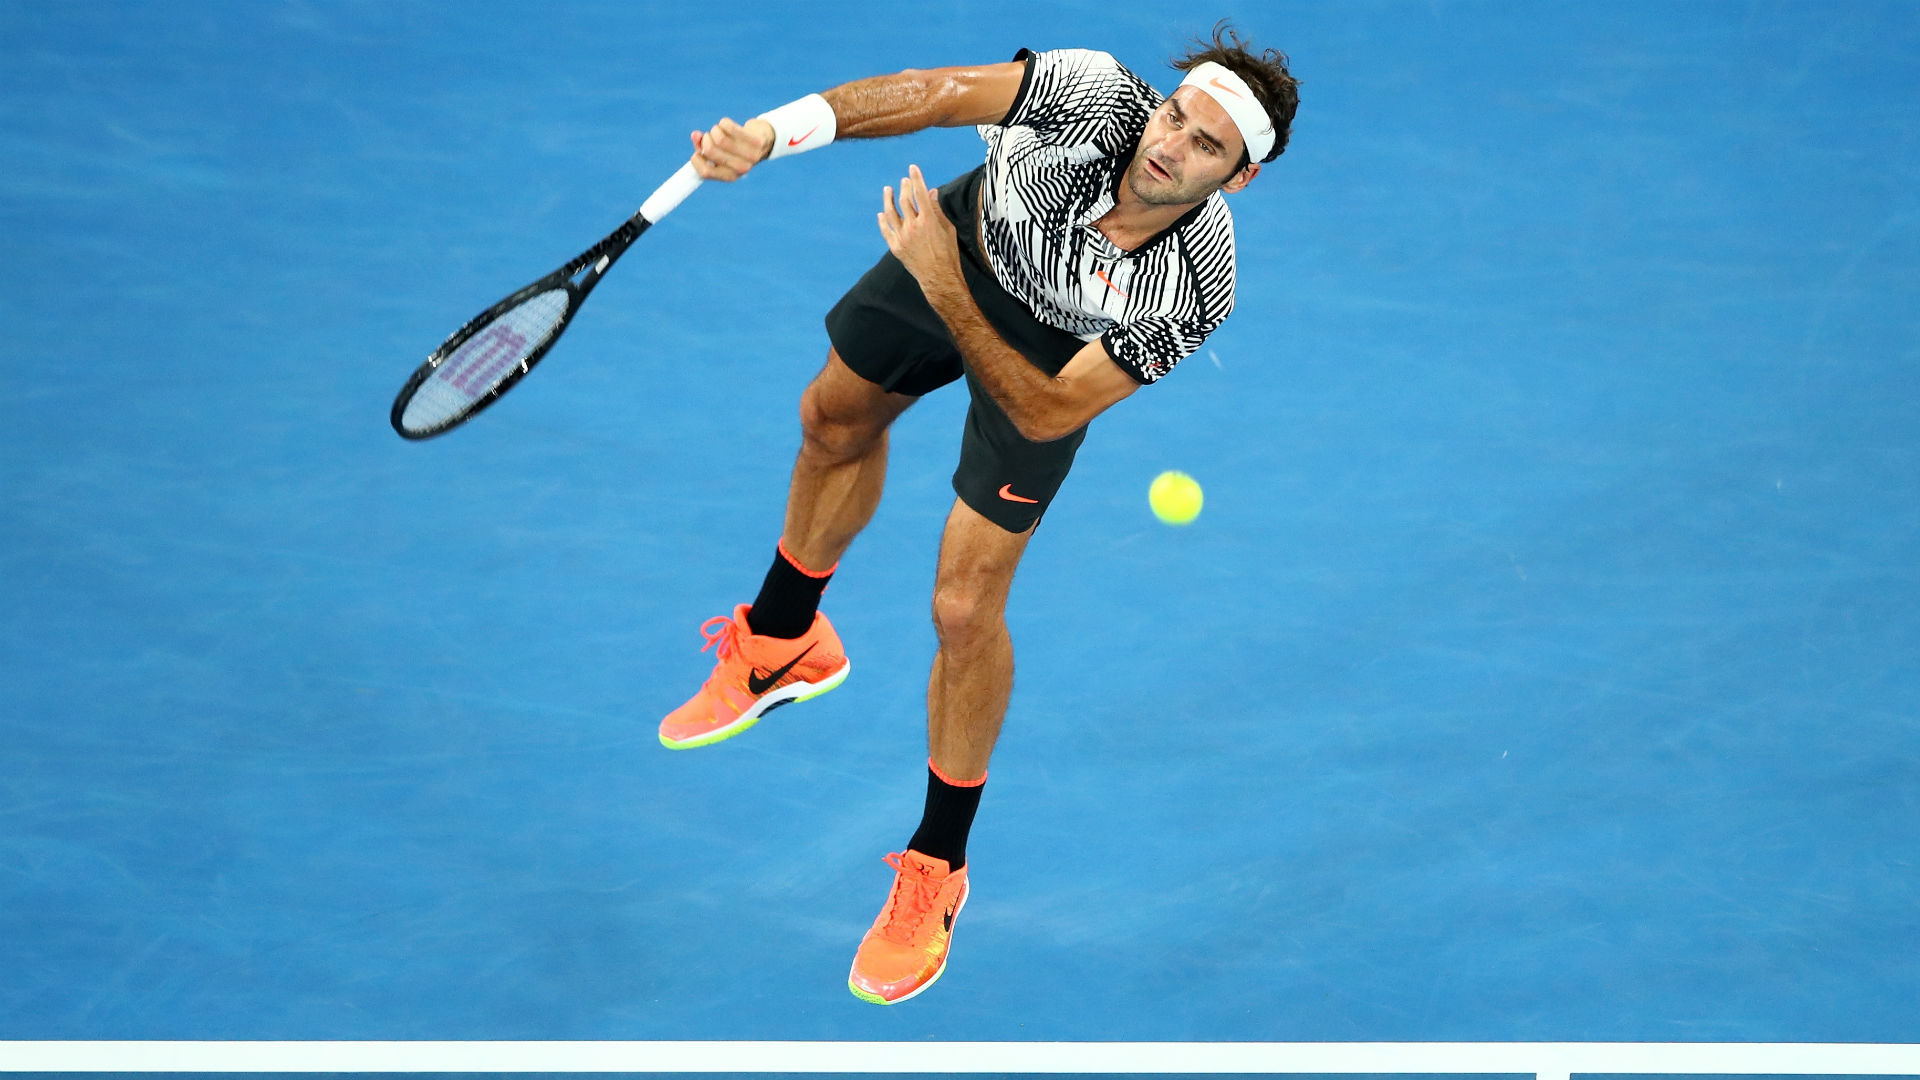 Australian Open 2017: Nervous Roger Federer advances in Grand Slam return | Other ...1920 x 1080